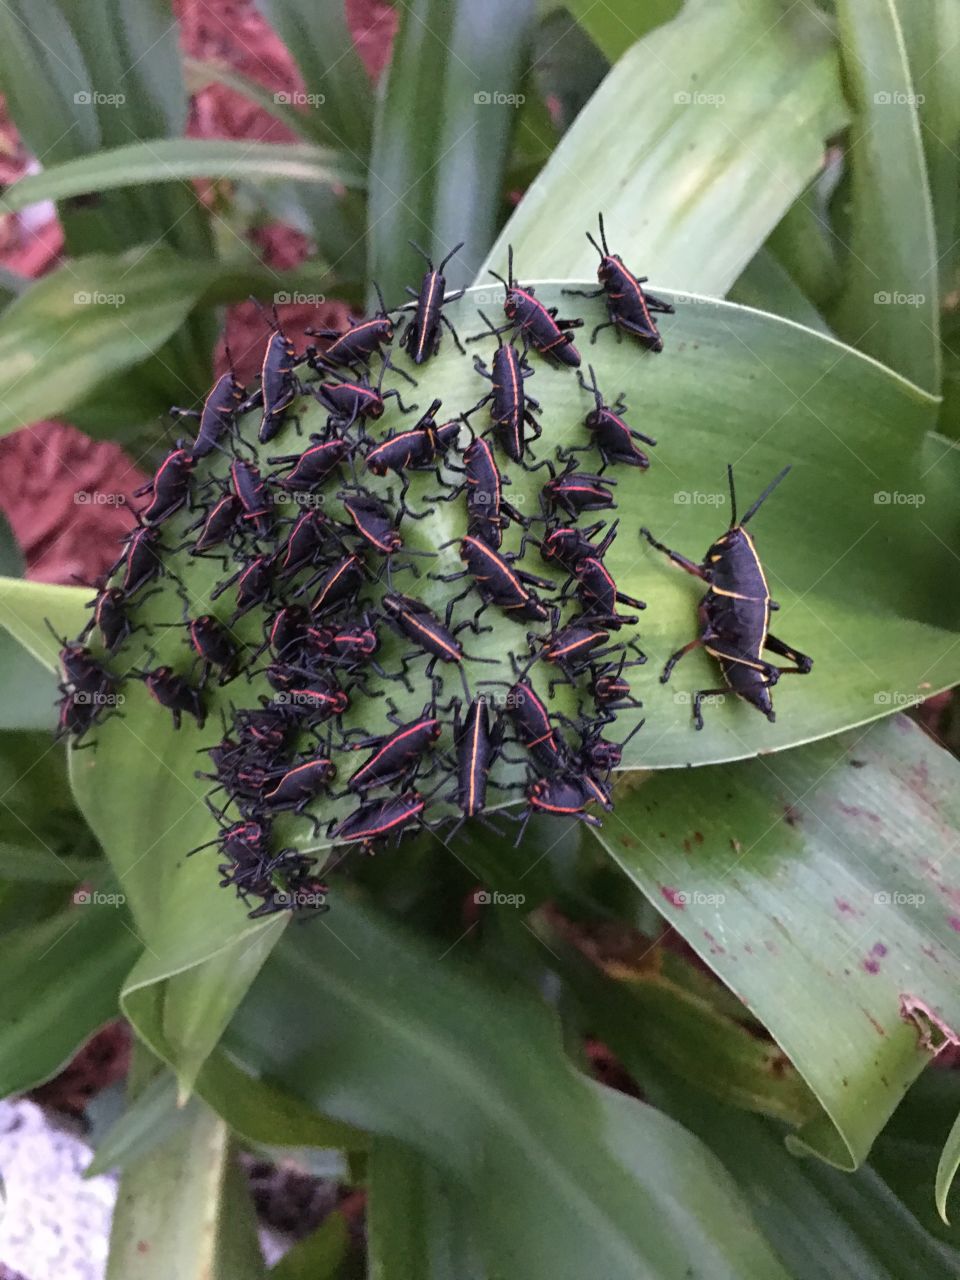 Locust babies